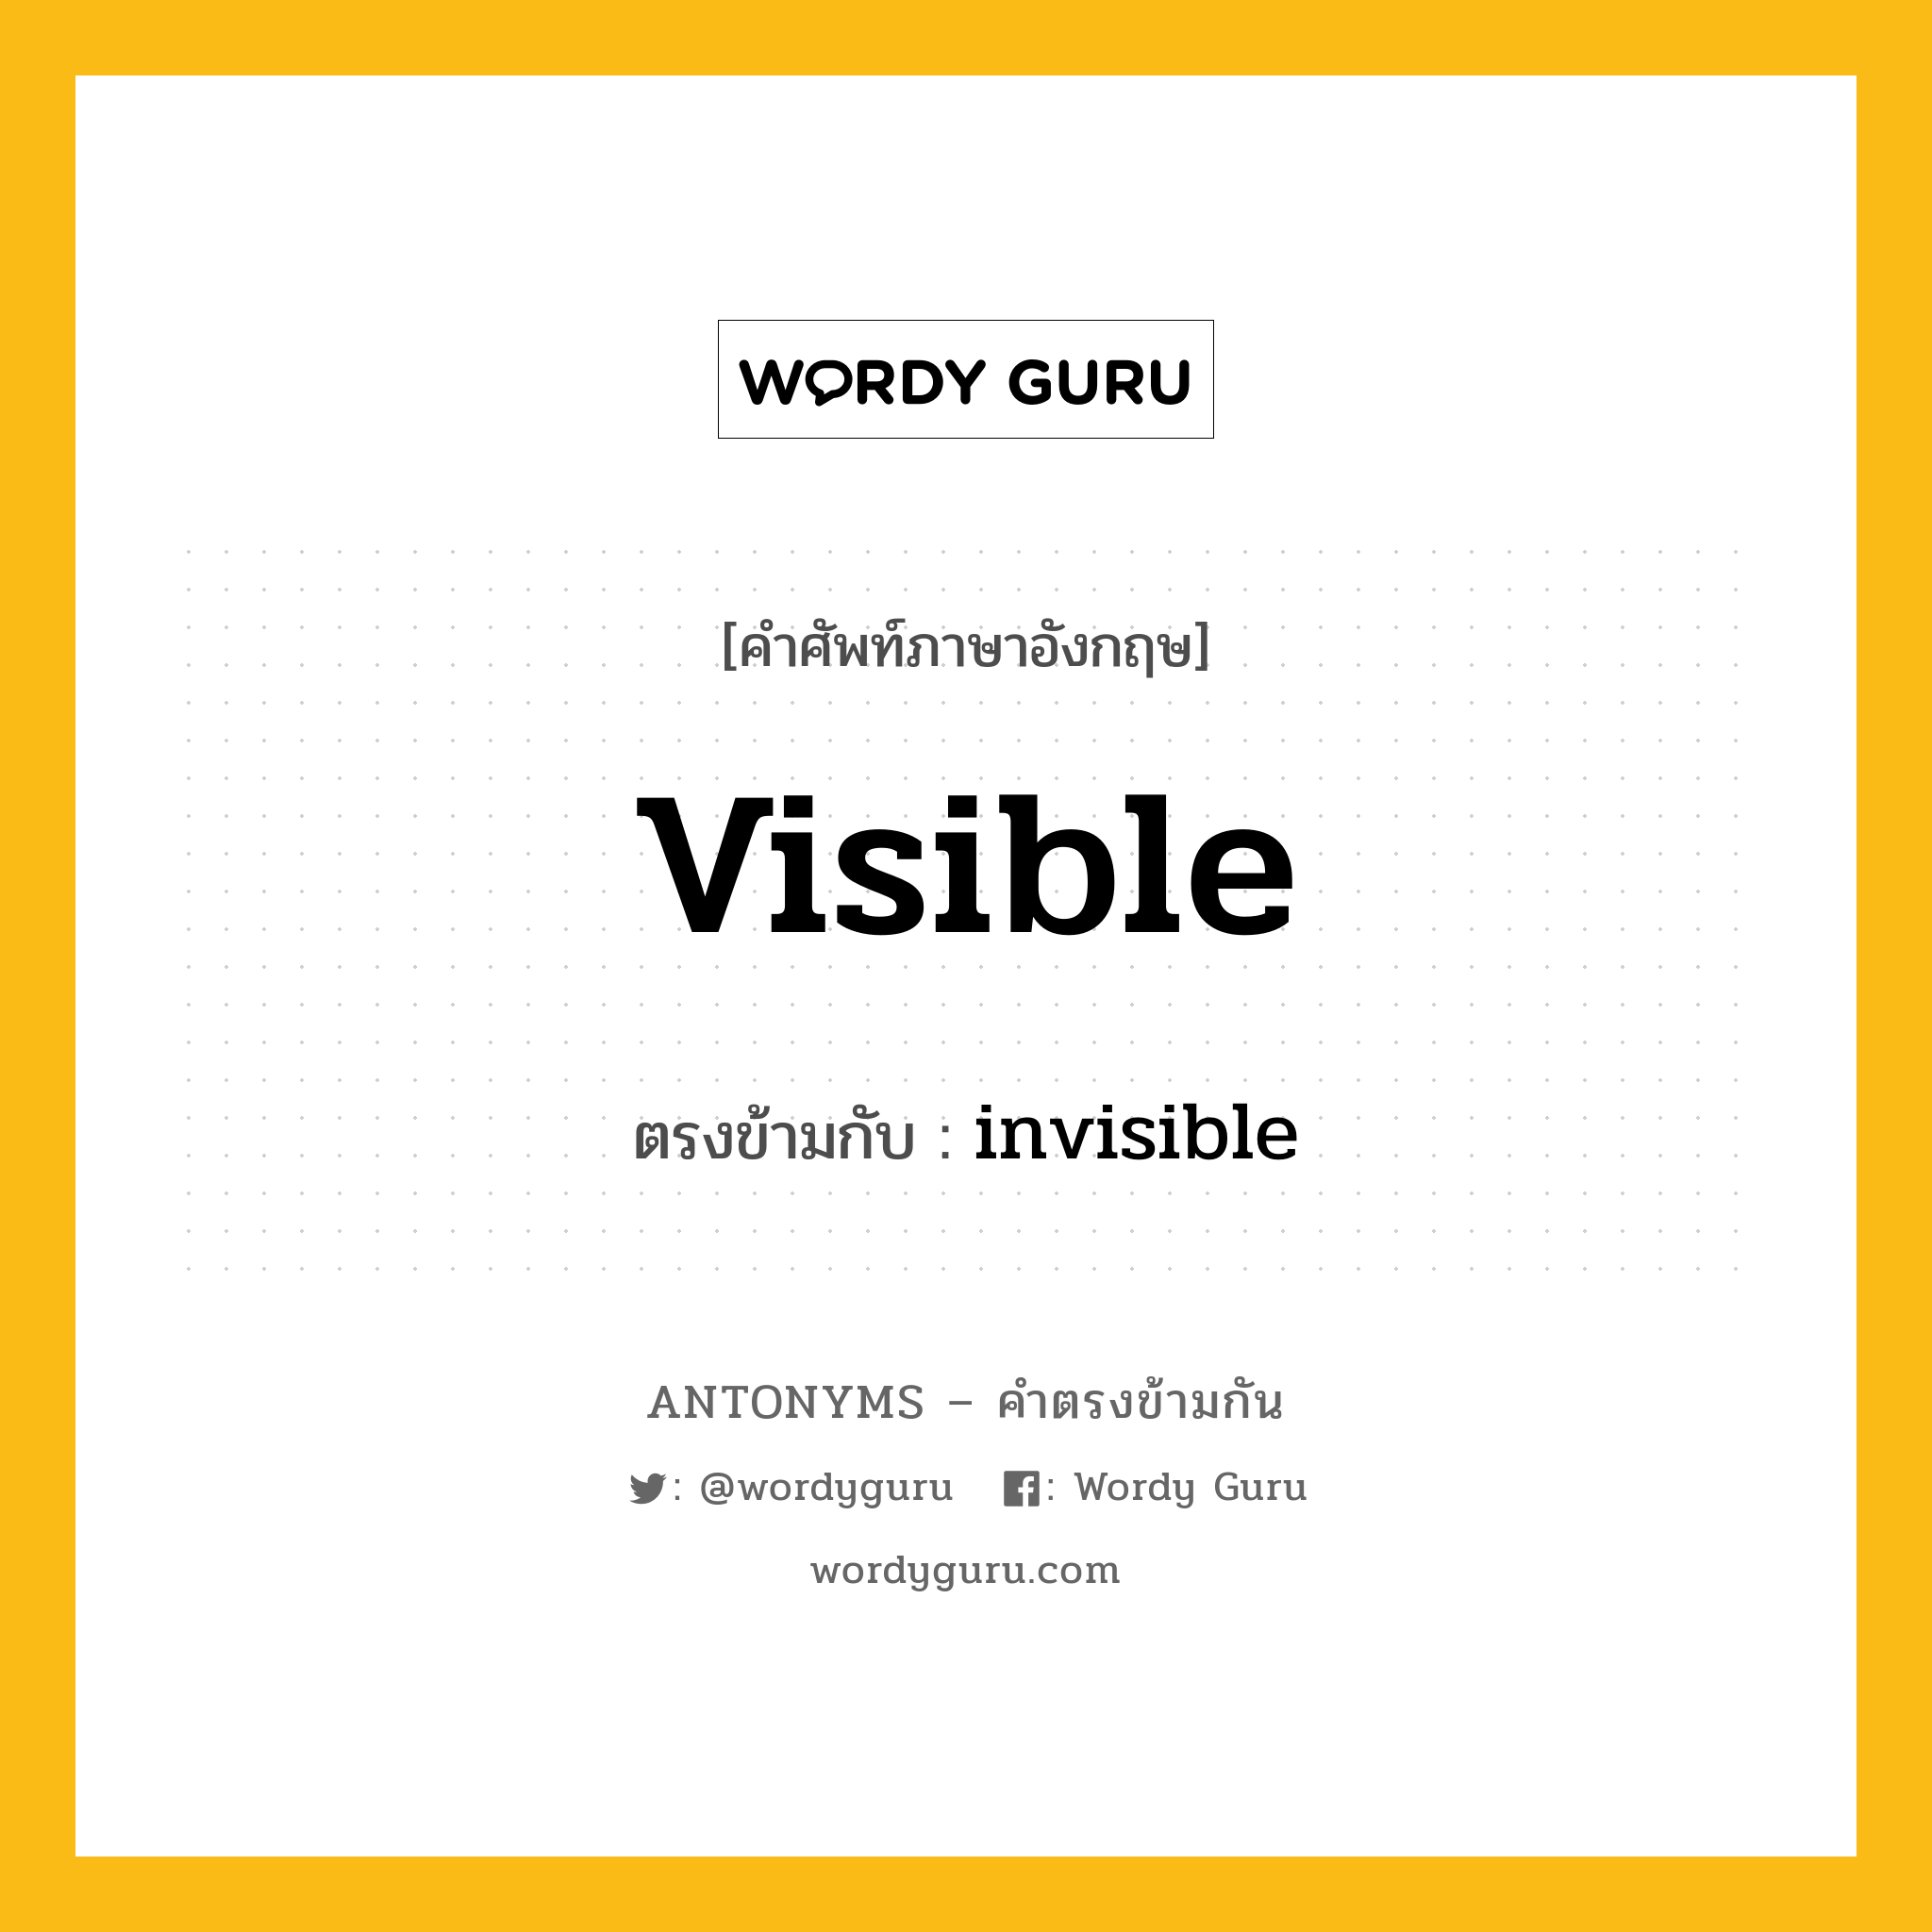 visible เป็นคำตรงข้ามกับคำไหนบ้าง?, คำศัพท์ภาษาอังกฤษ visible ตรงข้ามกับ invisible หมวด invisible